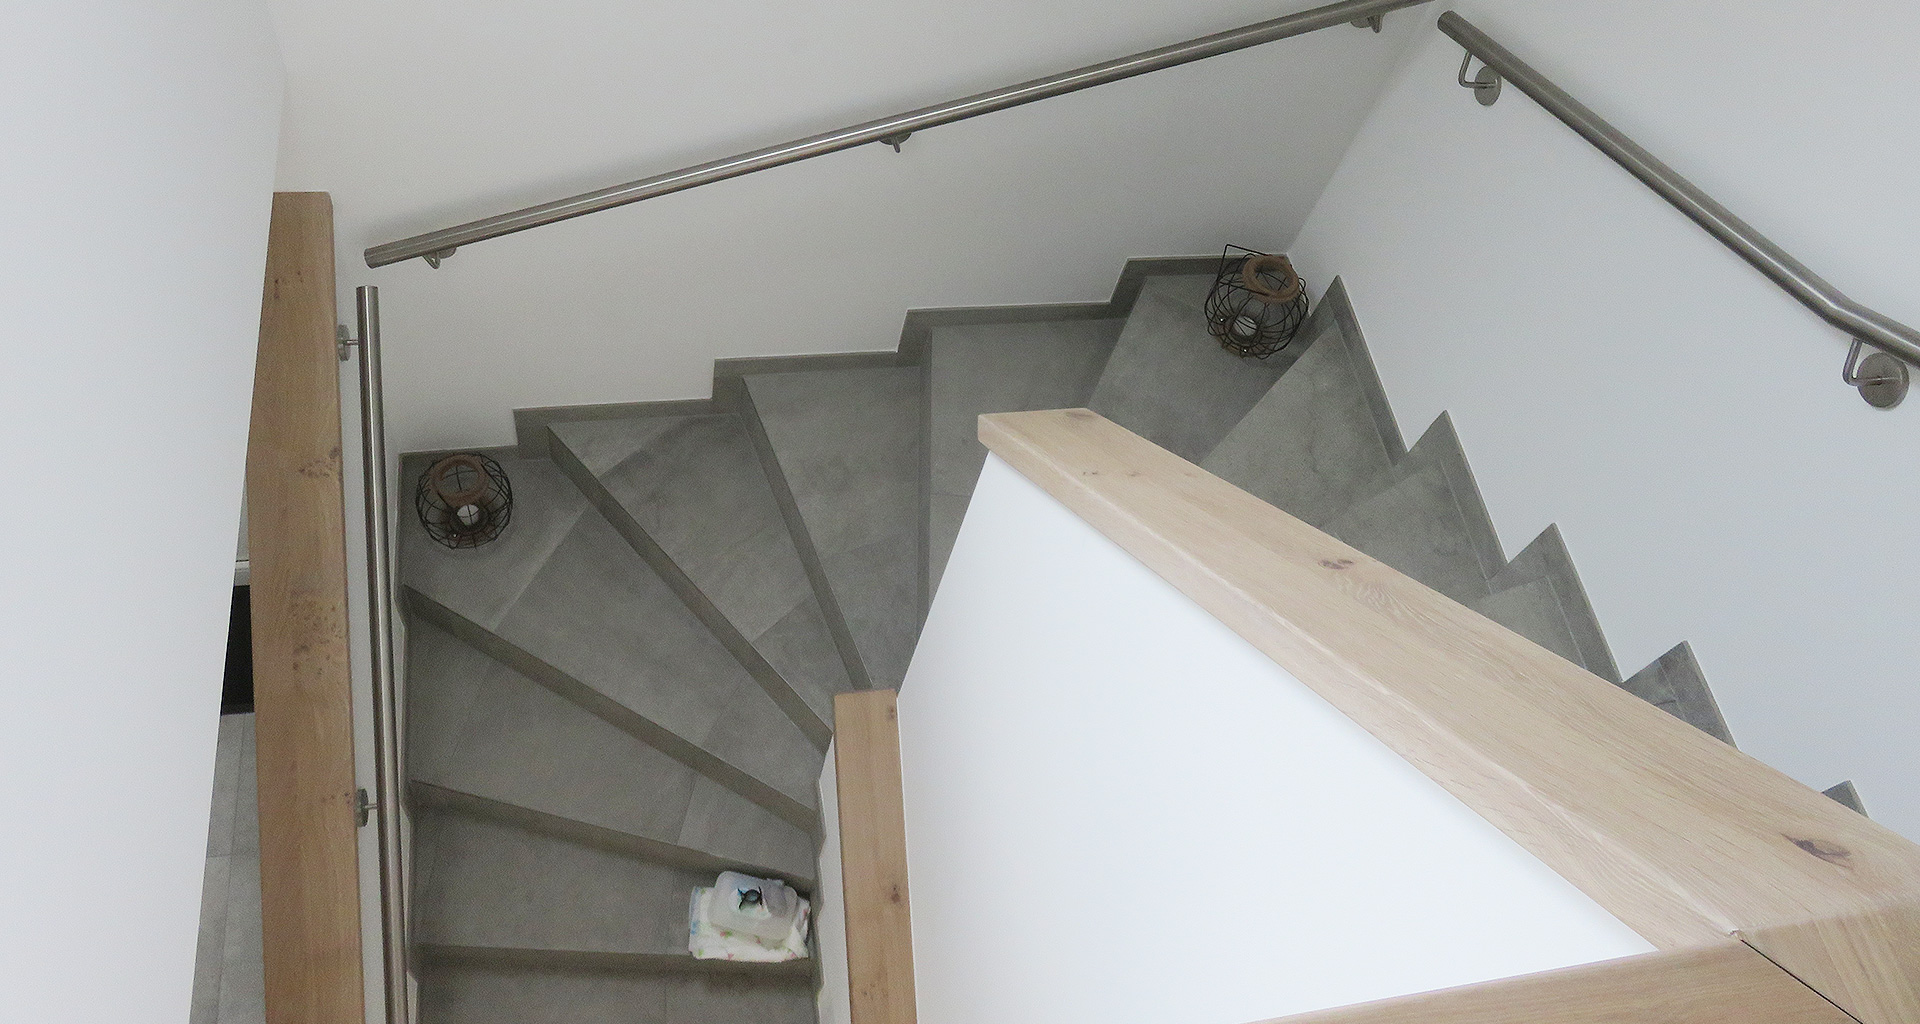 Einfamilienhaus Treppenaufgang von oben nach unten fotografiert in Grafschaft Bentheim Nordhorn 2017